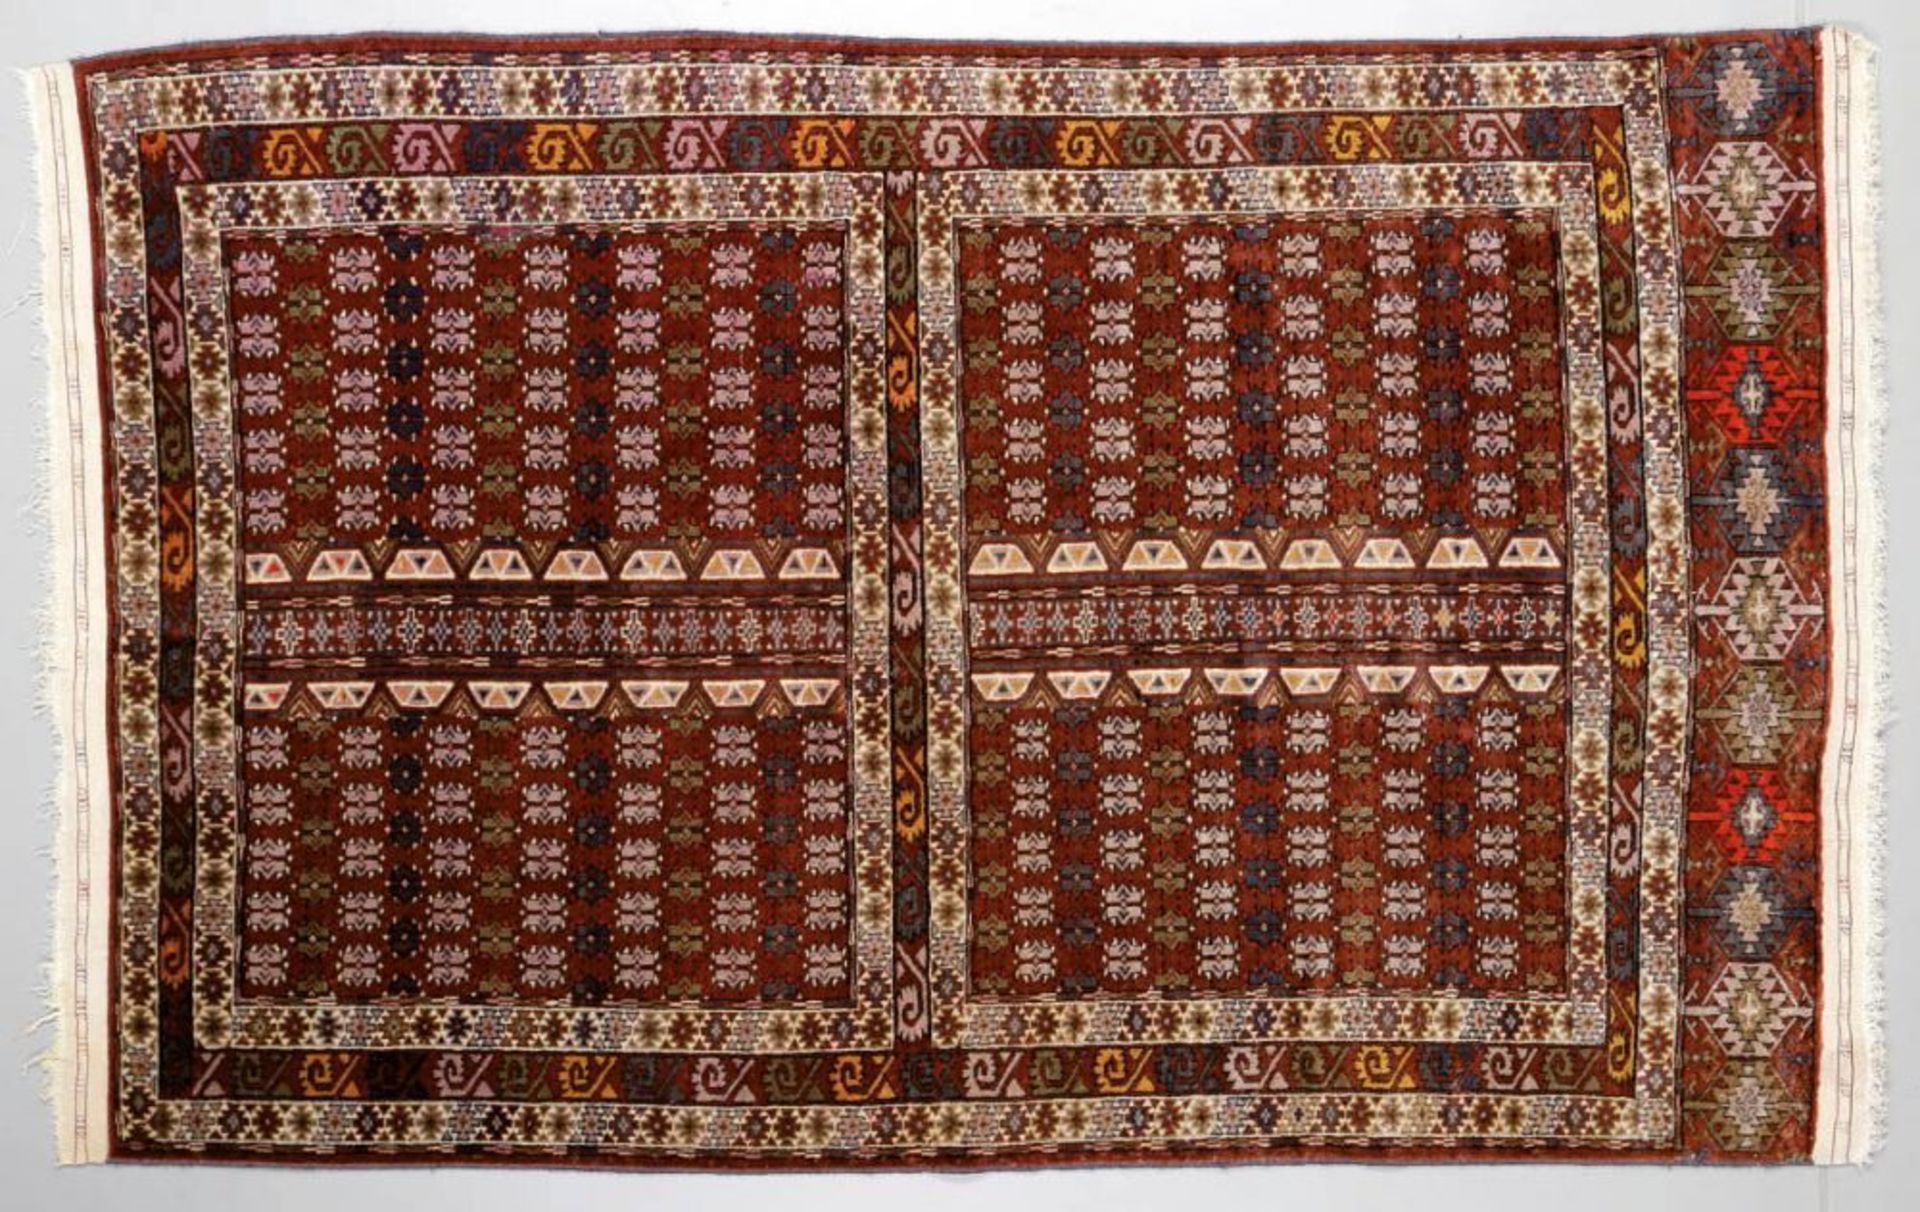 Hatschlou Turkmenistan. Wolle. 191 x 124 cm. Viergeteilter Teppich in unterschiedlichen Brauntönen